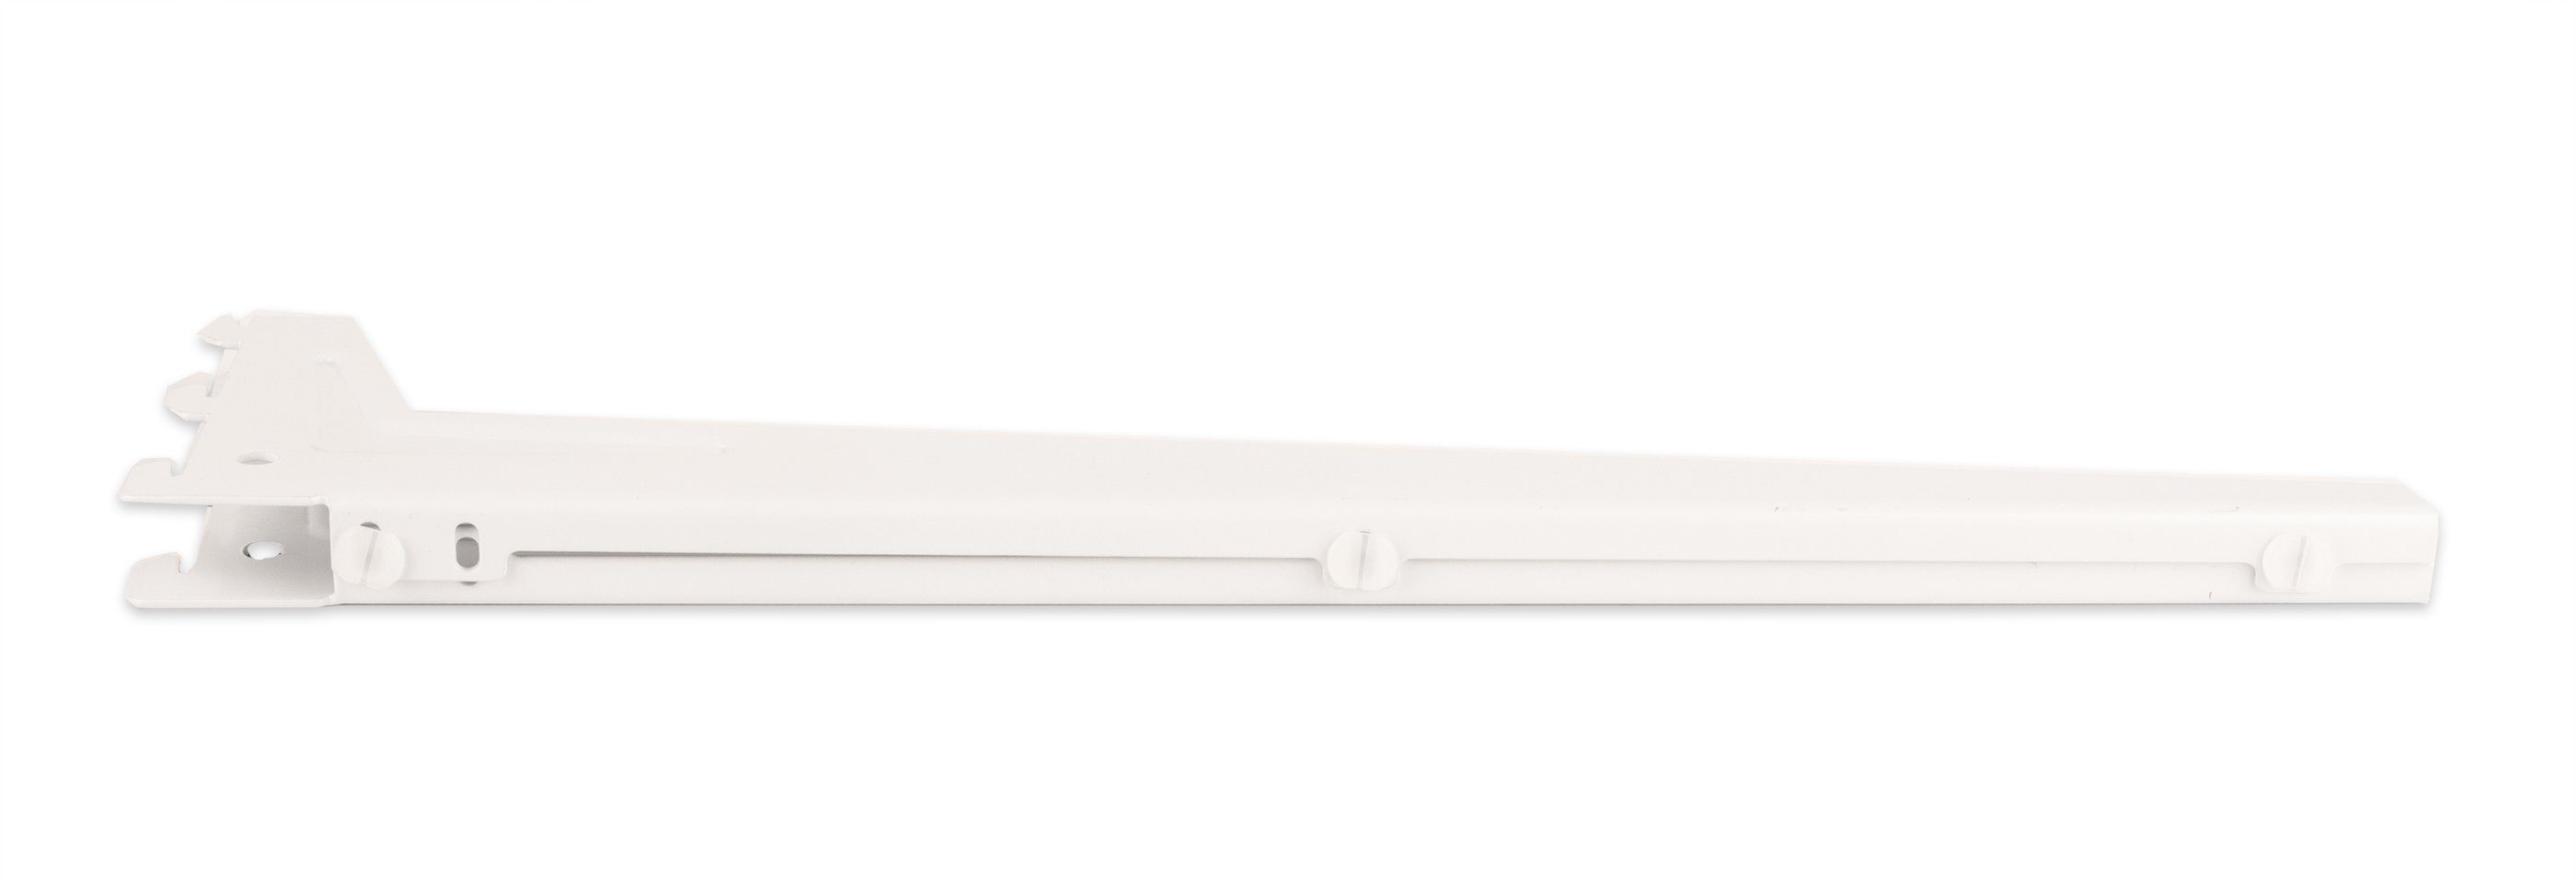 cm BigDean 18x5 Regalträger weiß Passend Wandschienen Winkel-Träger Wandregalhalter zu